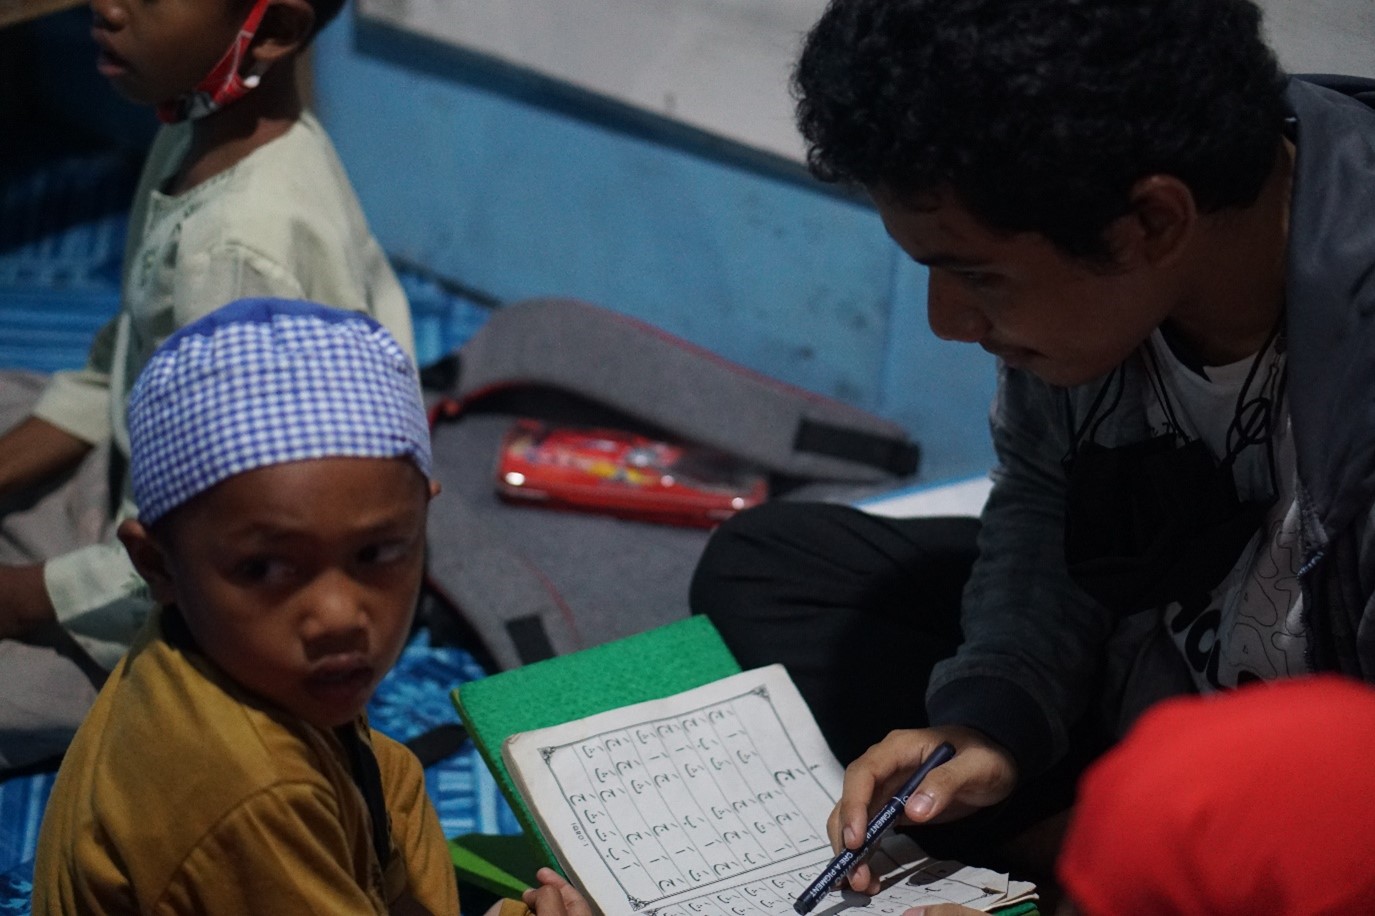 Anak-anak Jalanan Sedang Belajar Mengaji bersama Pengajar KPAJ Area Binaan Adhyaksa, Kota Makassar, Sulawesi Selatan (15/11/2021)